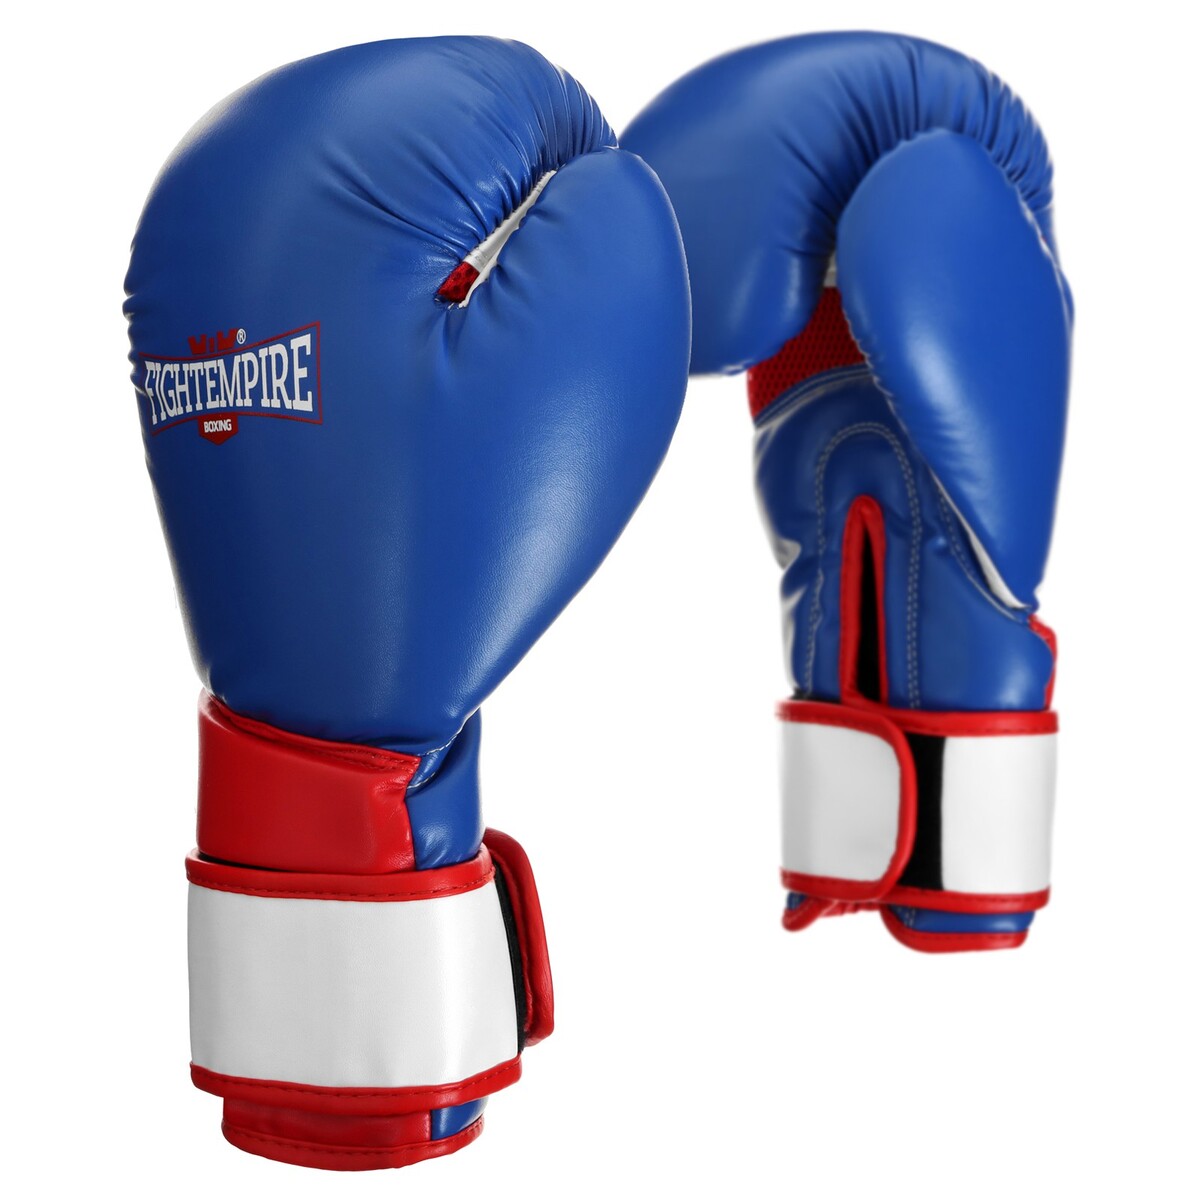 Перчатки боксерские fight empire, elite, синие, размер 10 oz